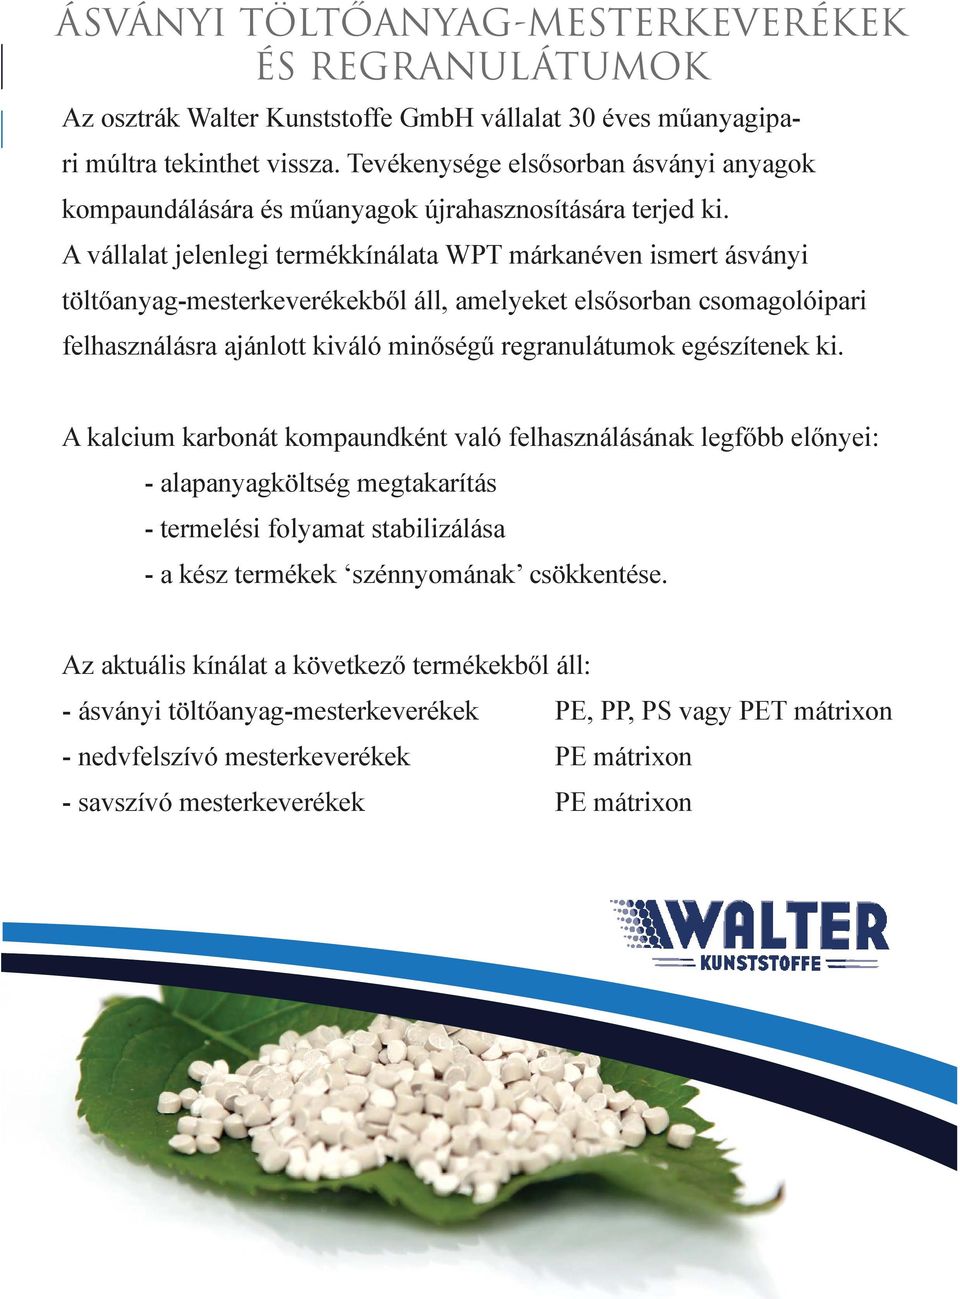 A vállalat jelenlegi termékkínálata WPT márkanéven ismert ásványi töltőanyag-mesterkeverékekből áll, amelyeket elsősorban csomagolóipari felhasználásra ajánlott kiváló minőségű regranulátumok